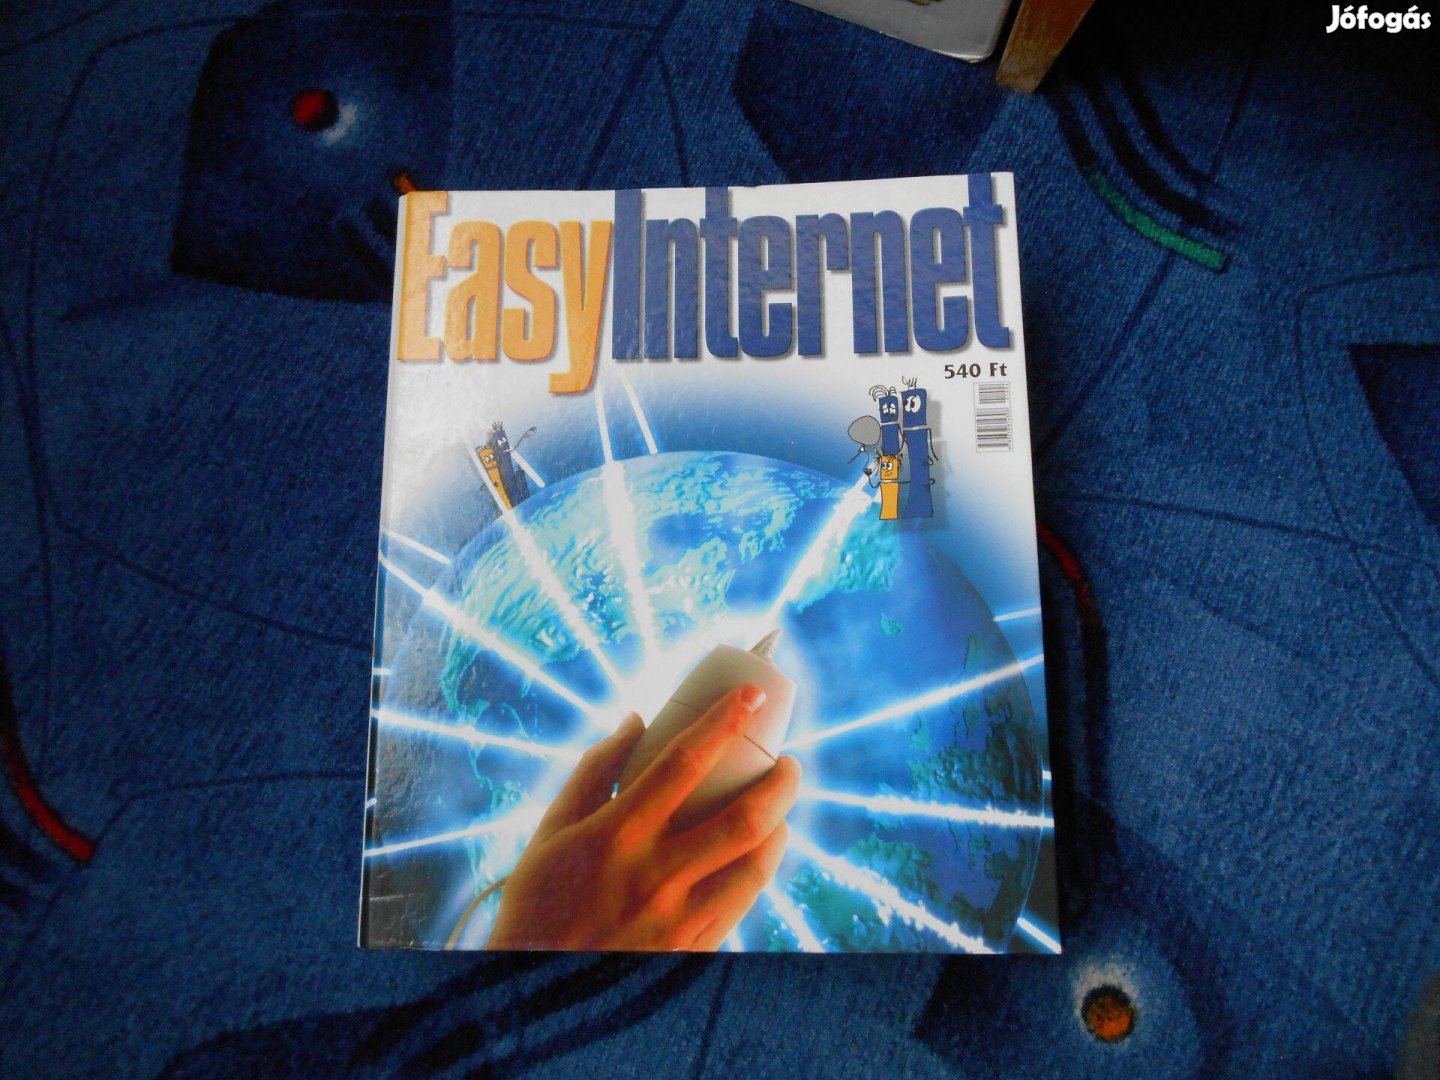 Einspach Csaba-Somogyi Absa: Easy Internet